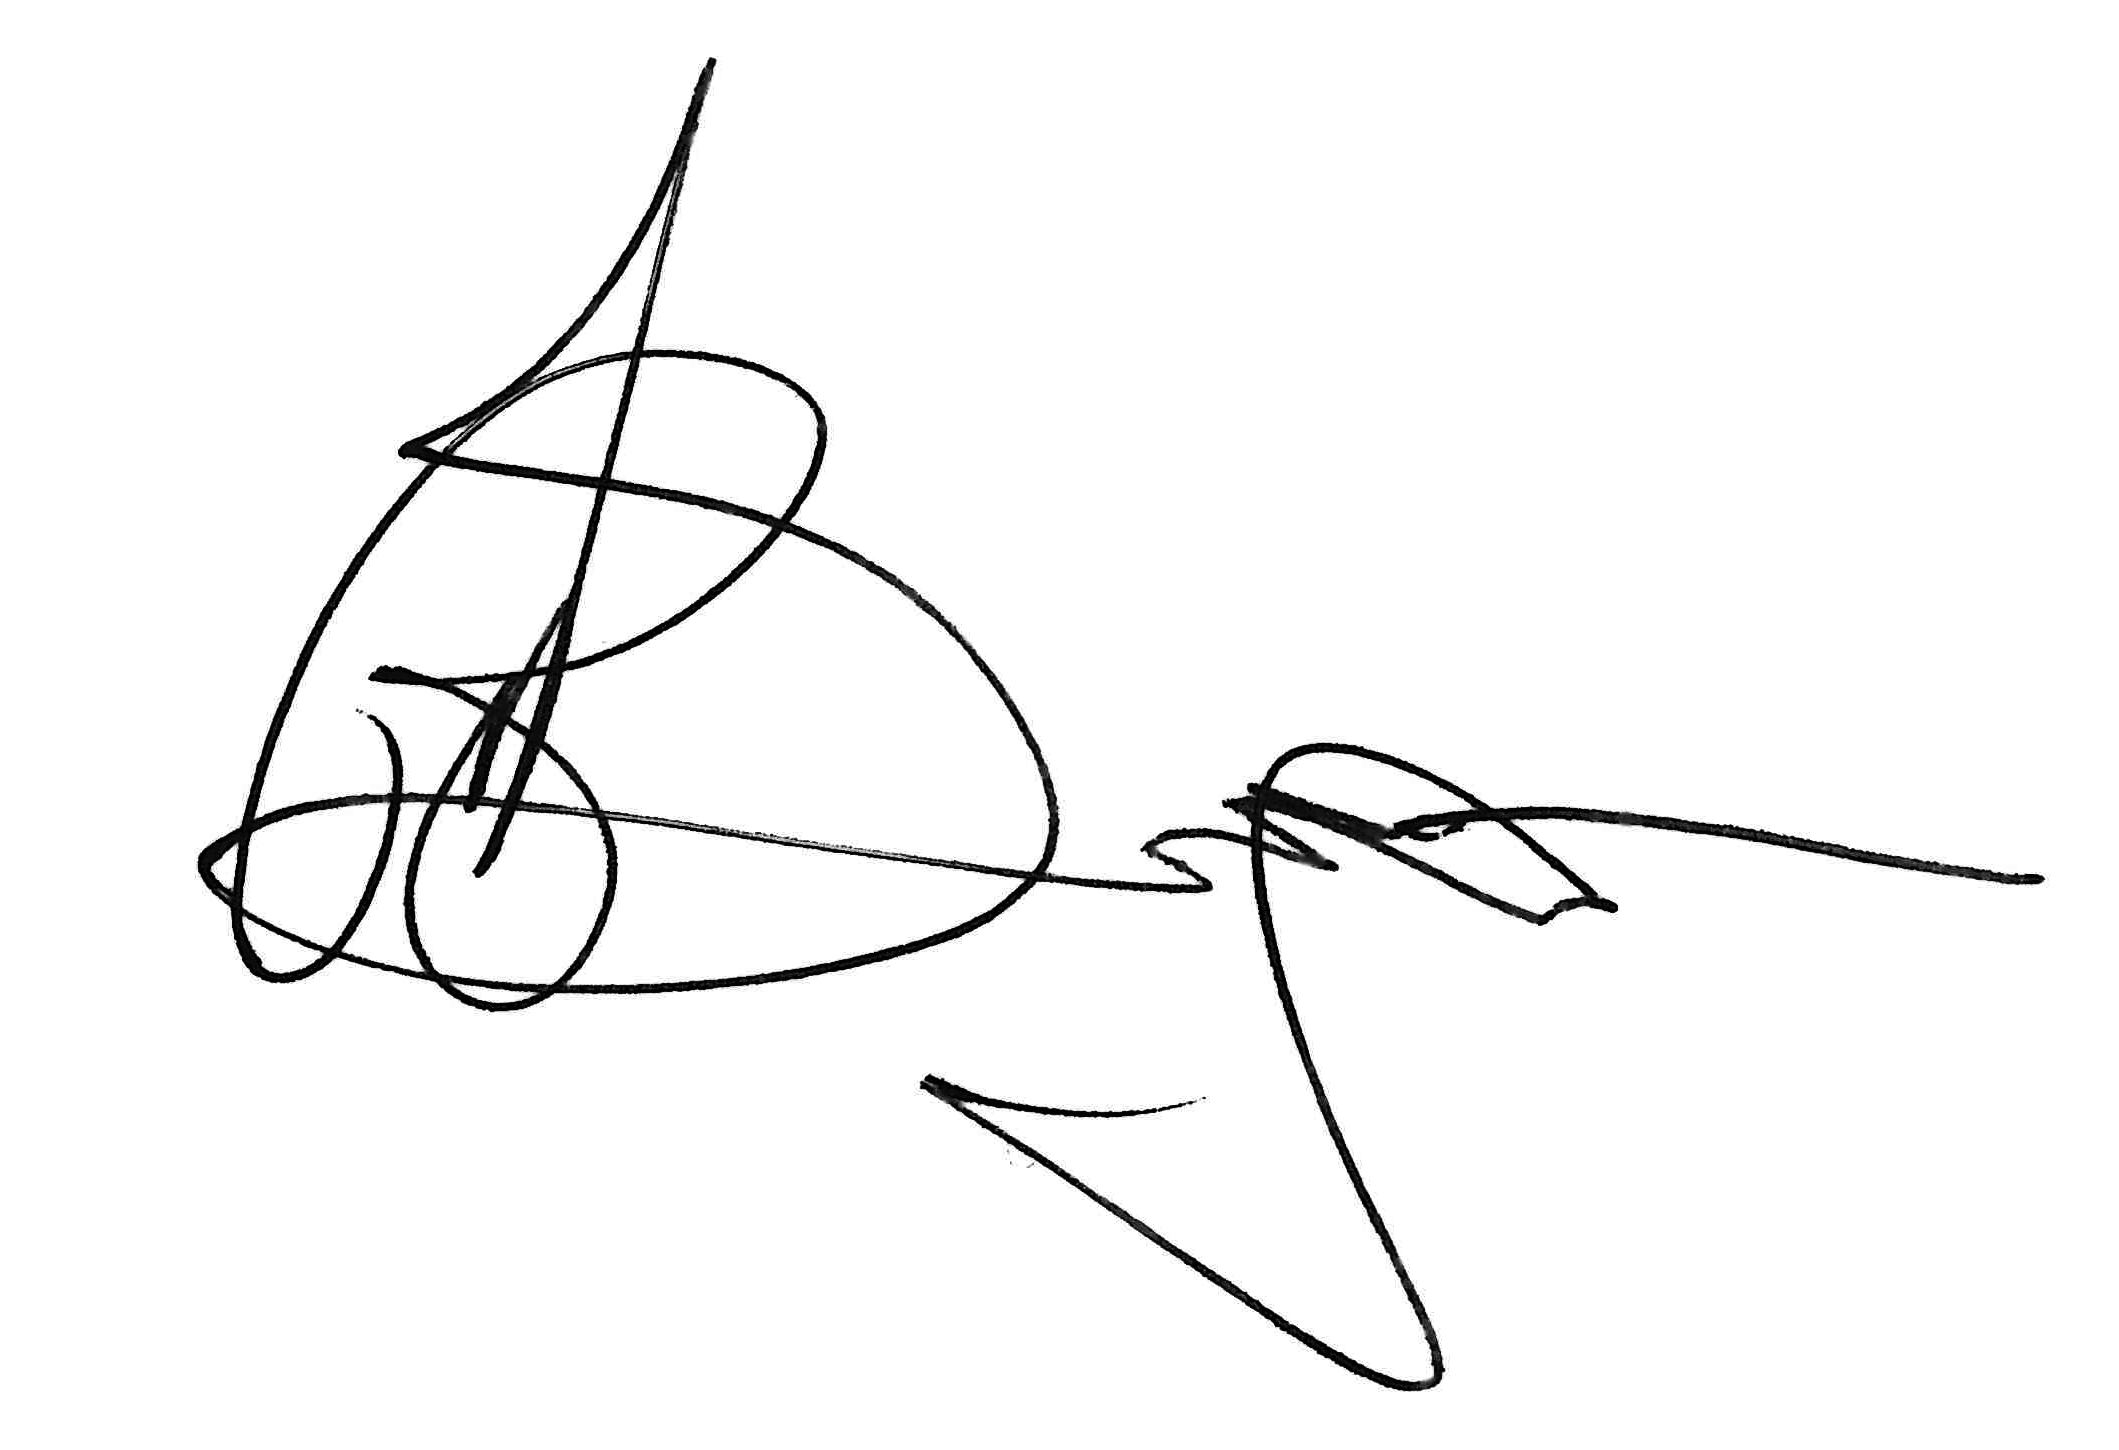 Rod Signature